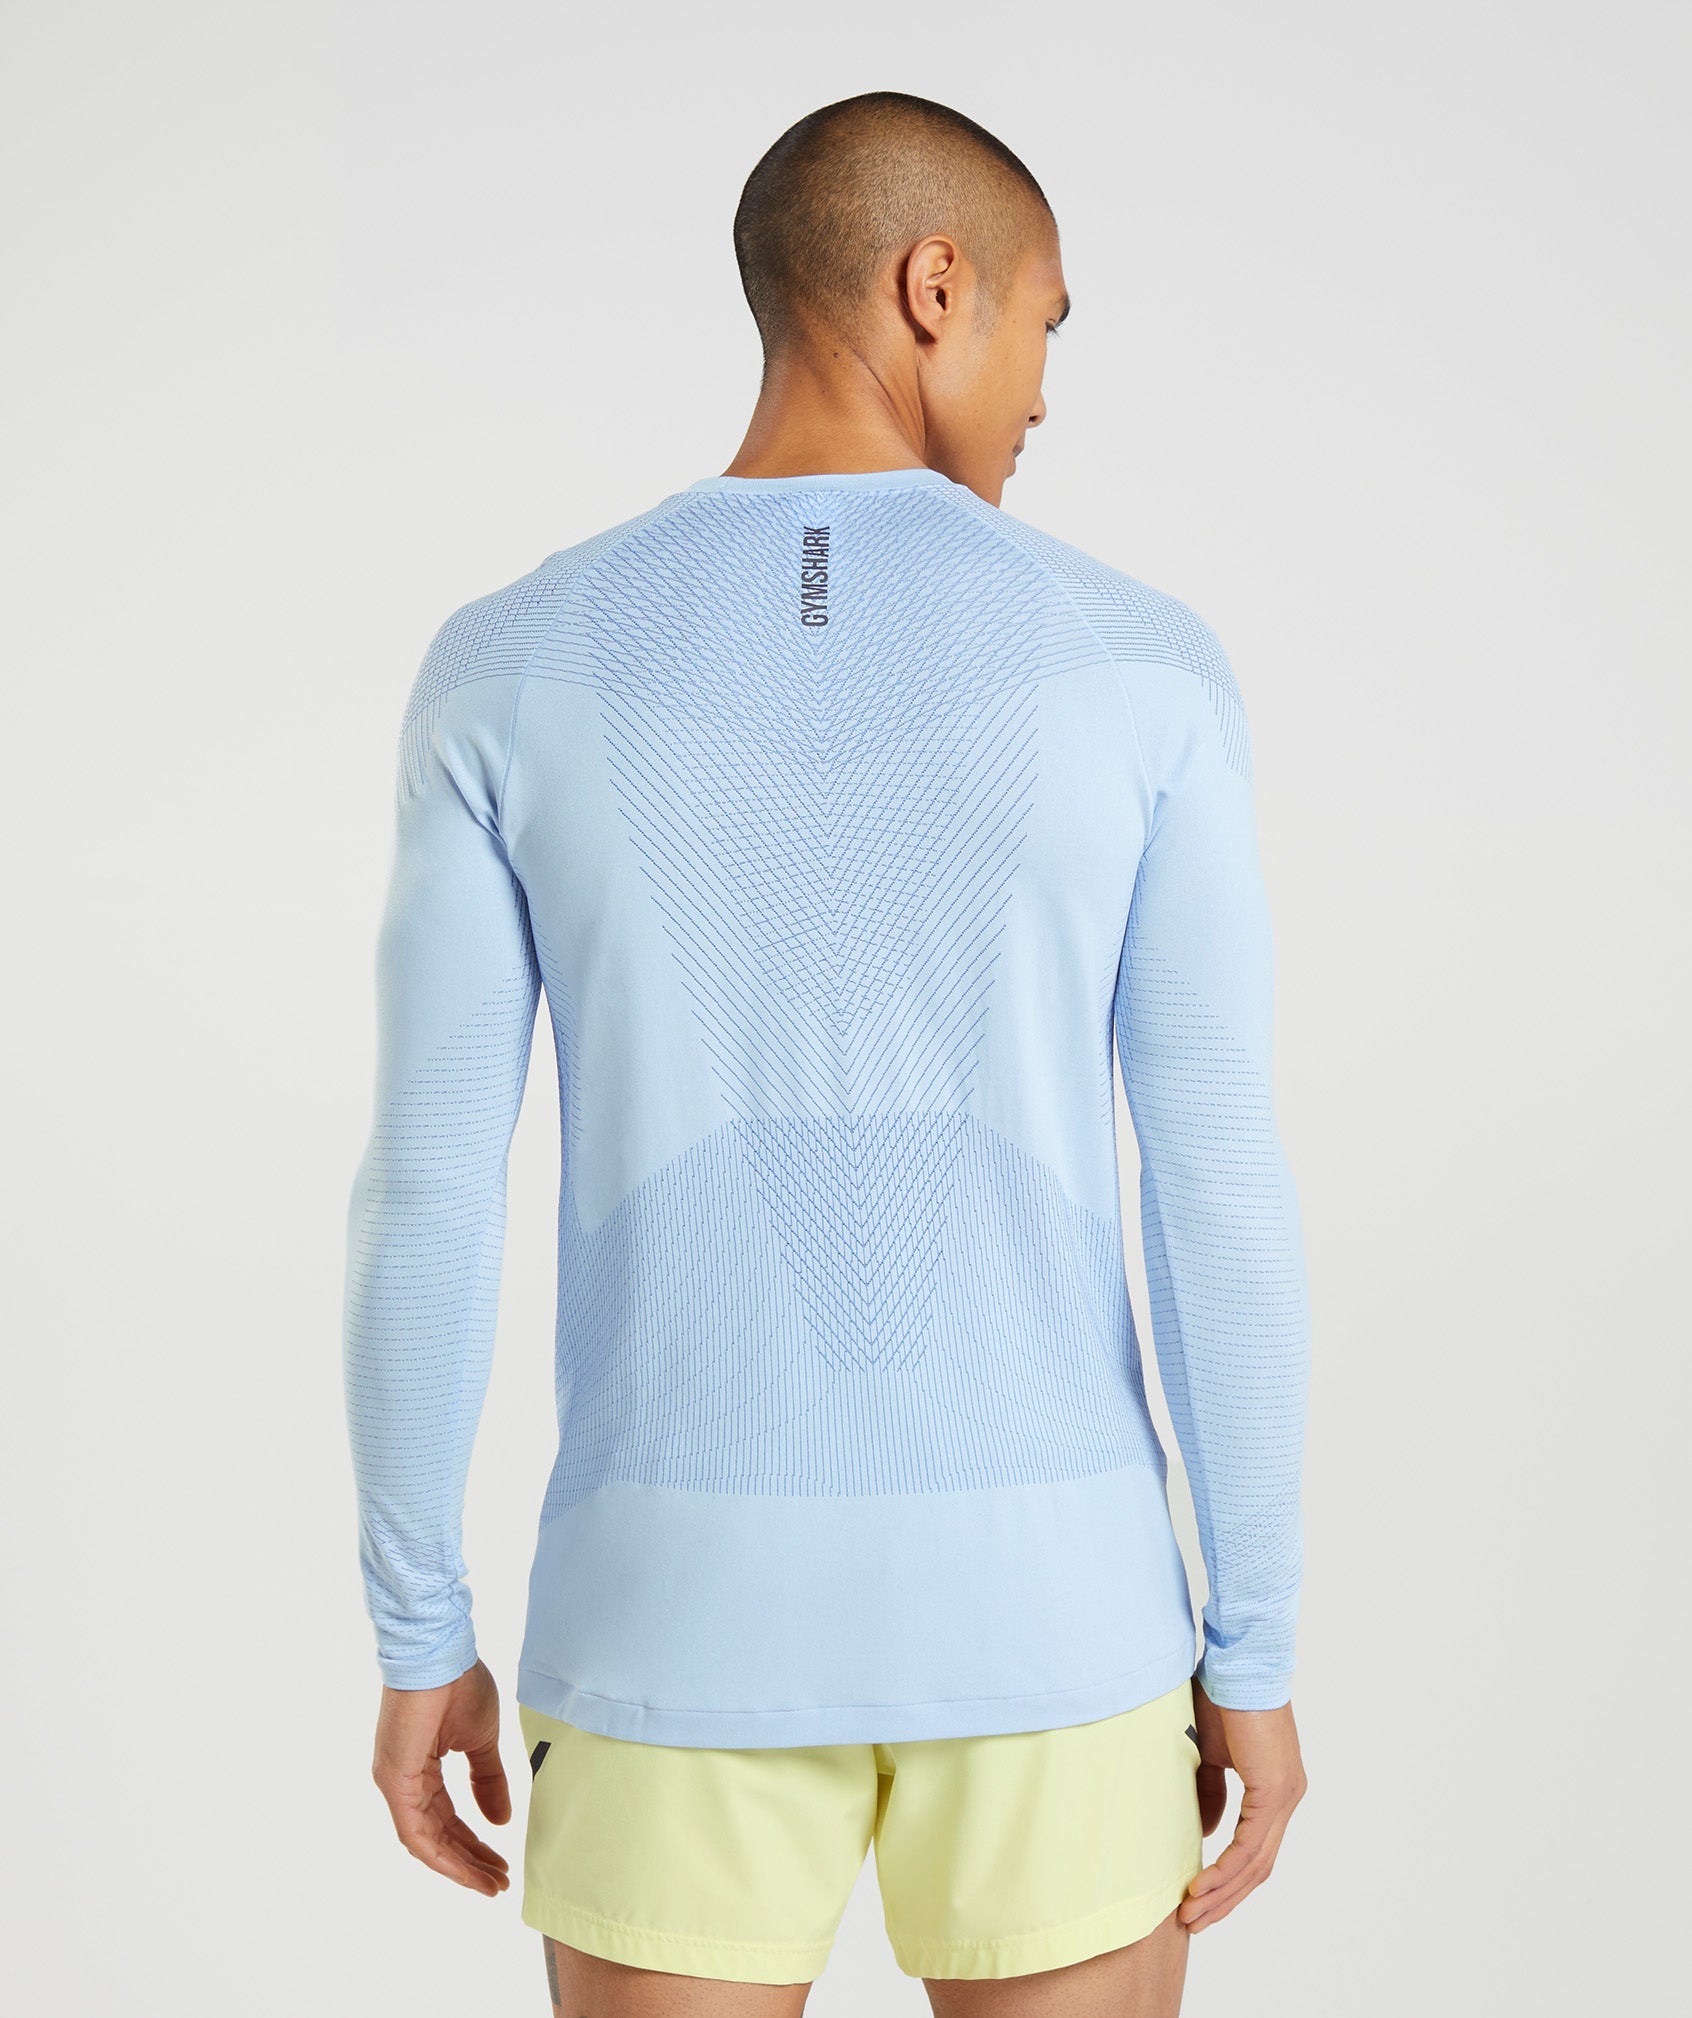 Apex Seamless Long Sleeve T-Shirt in Linen Blue/Court Blue